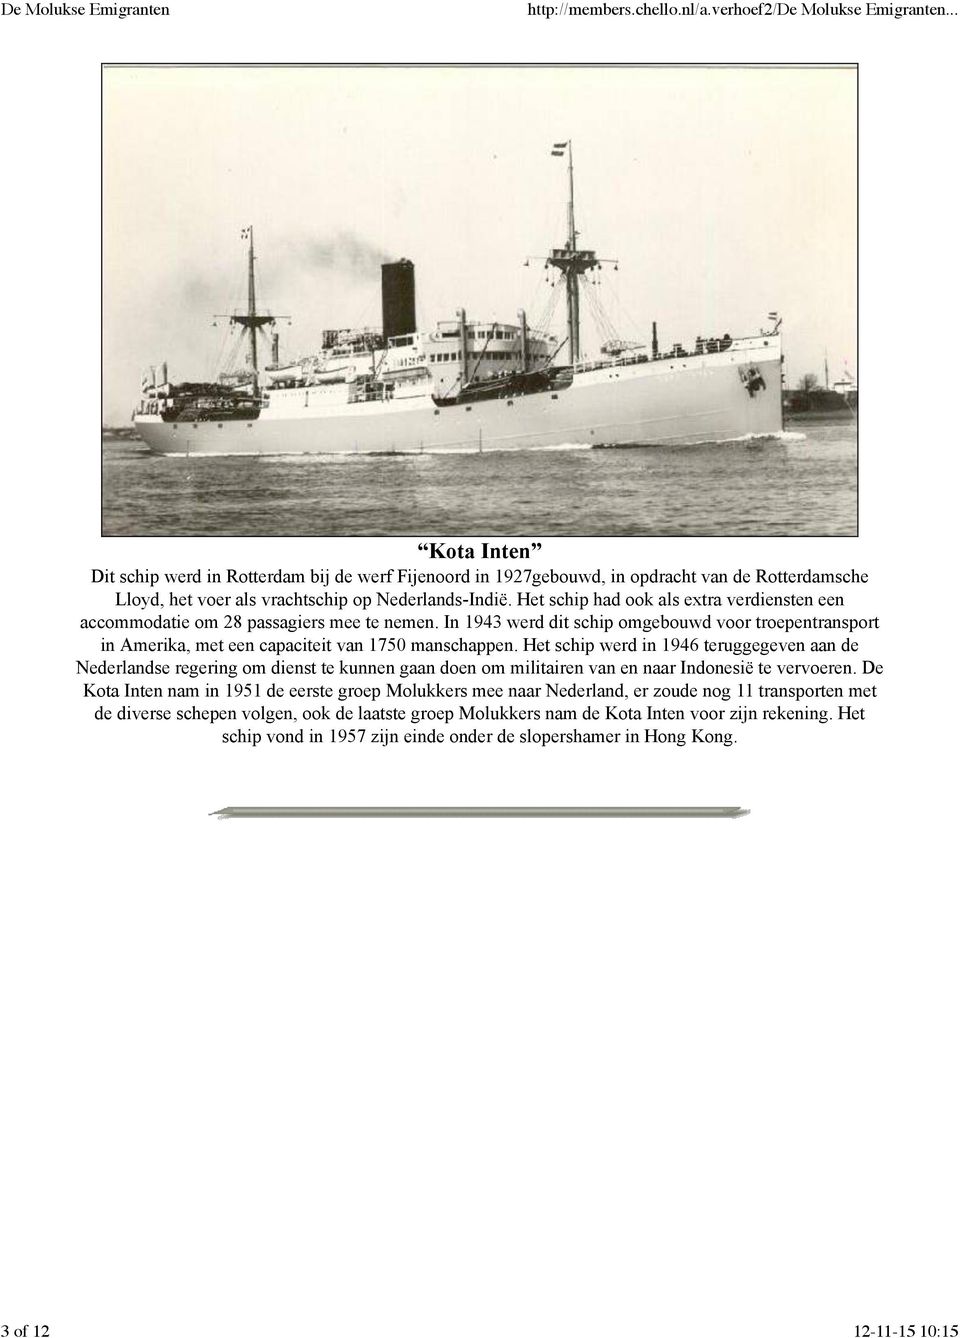 Het schip werd in 1946 teruggegeven aan de Nederlandse regering om dienst te kunnen gaan doen om militairen van en naar Indonesië te vervoeren.